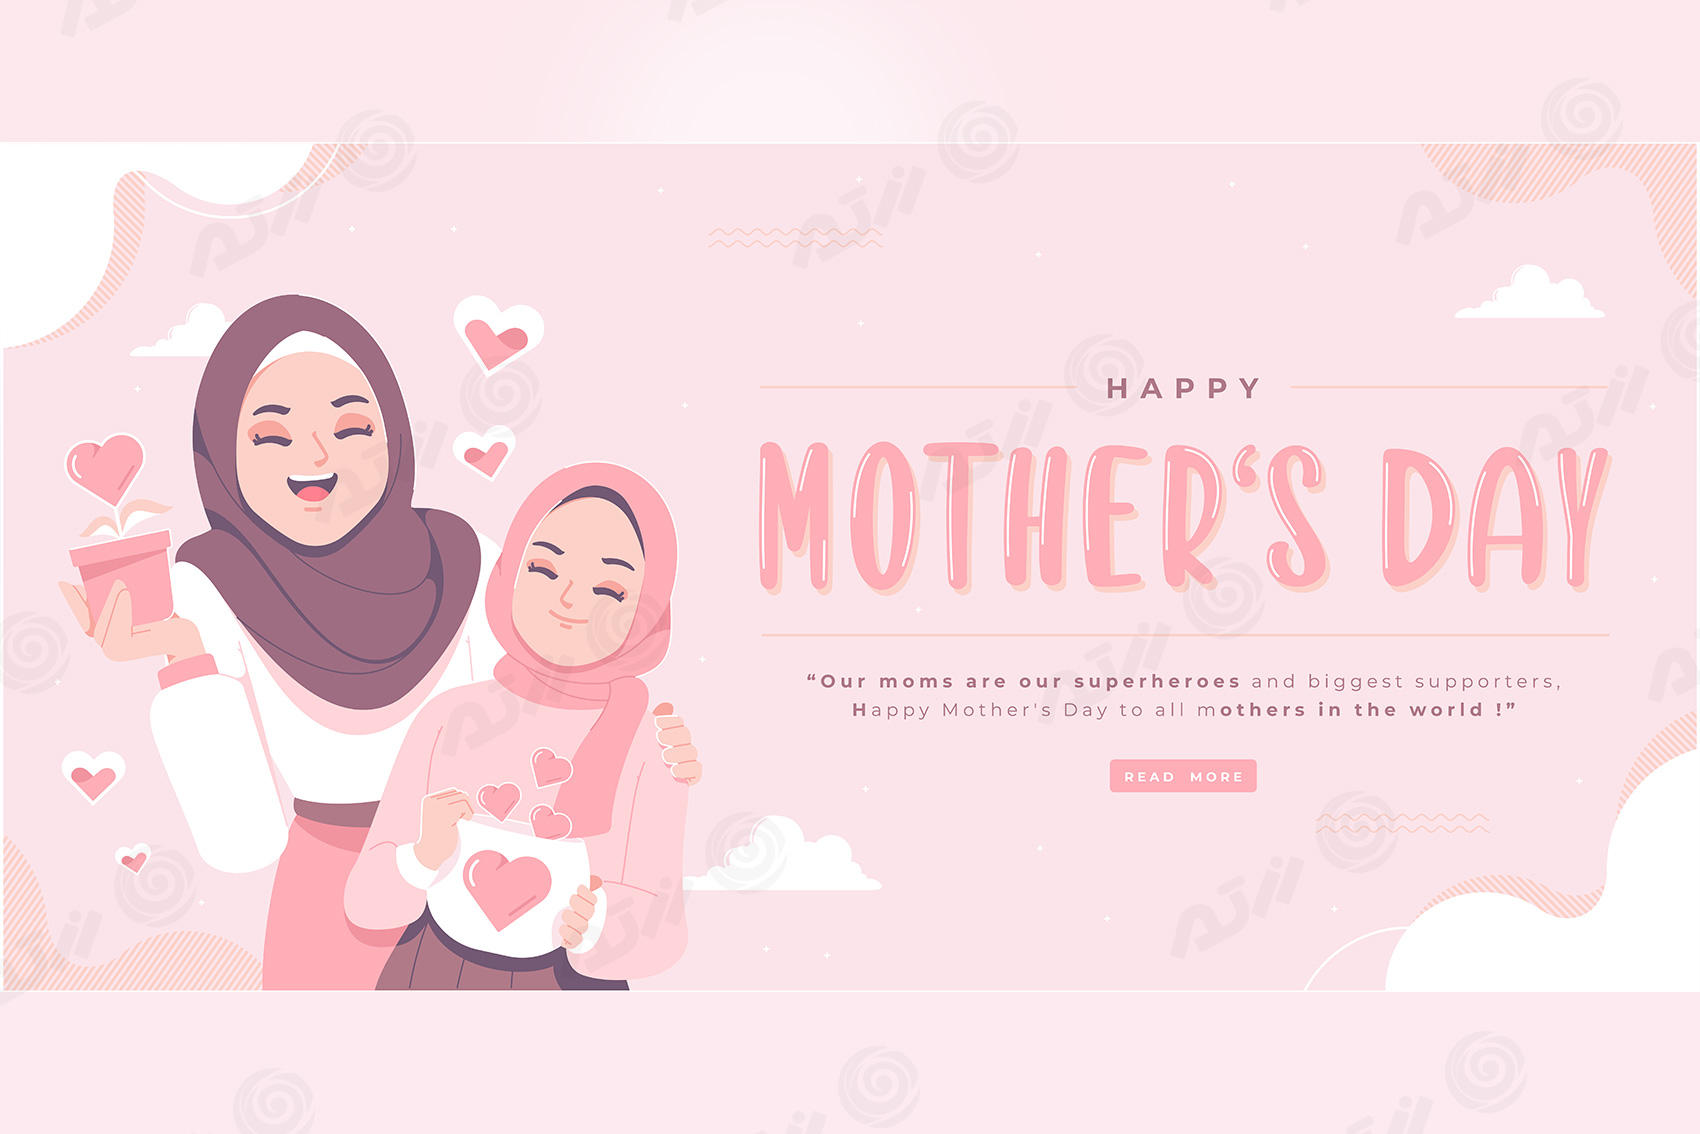 وکتور کارت تبریک ویژه روز مادر شامل مادر و دختر  با حجاب اسلامی